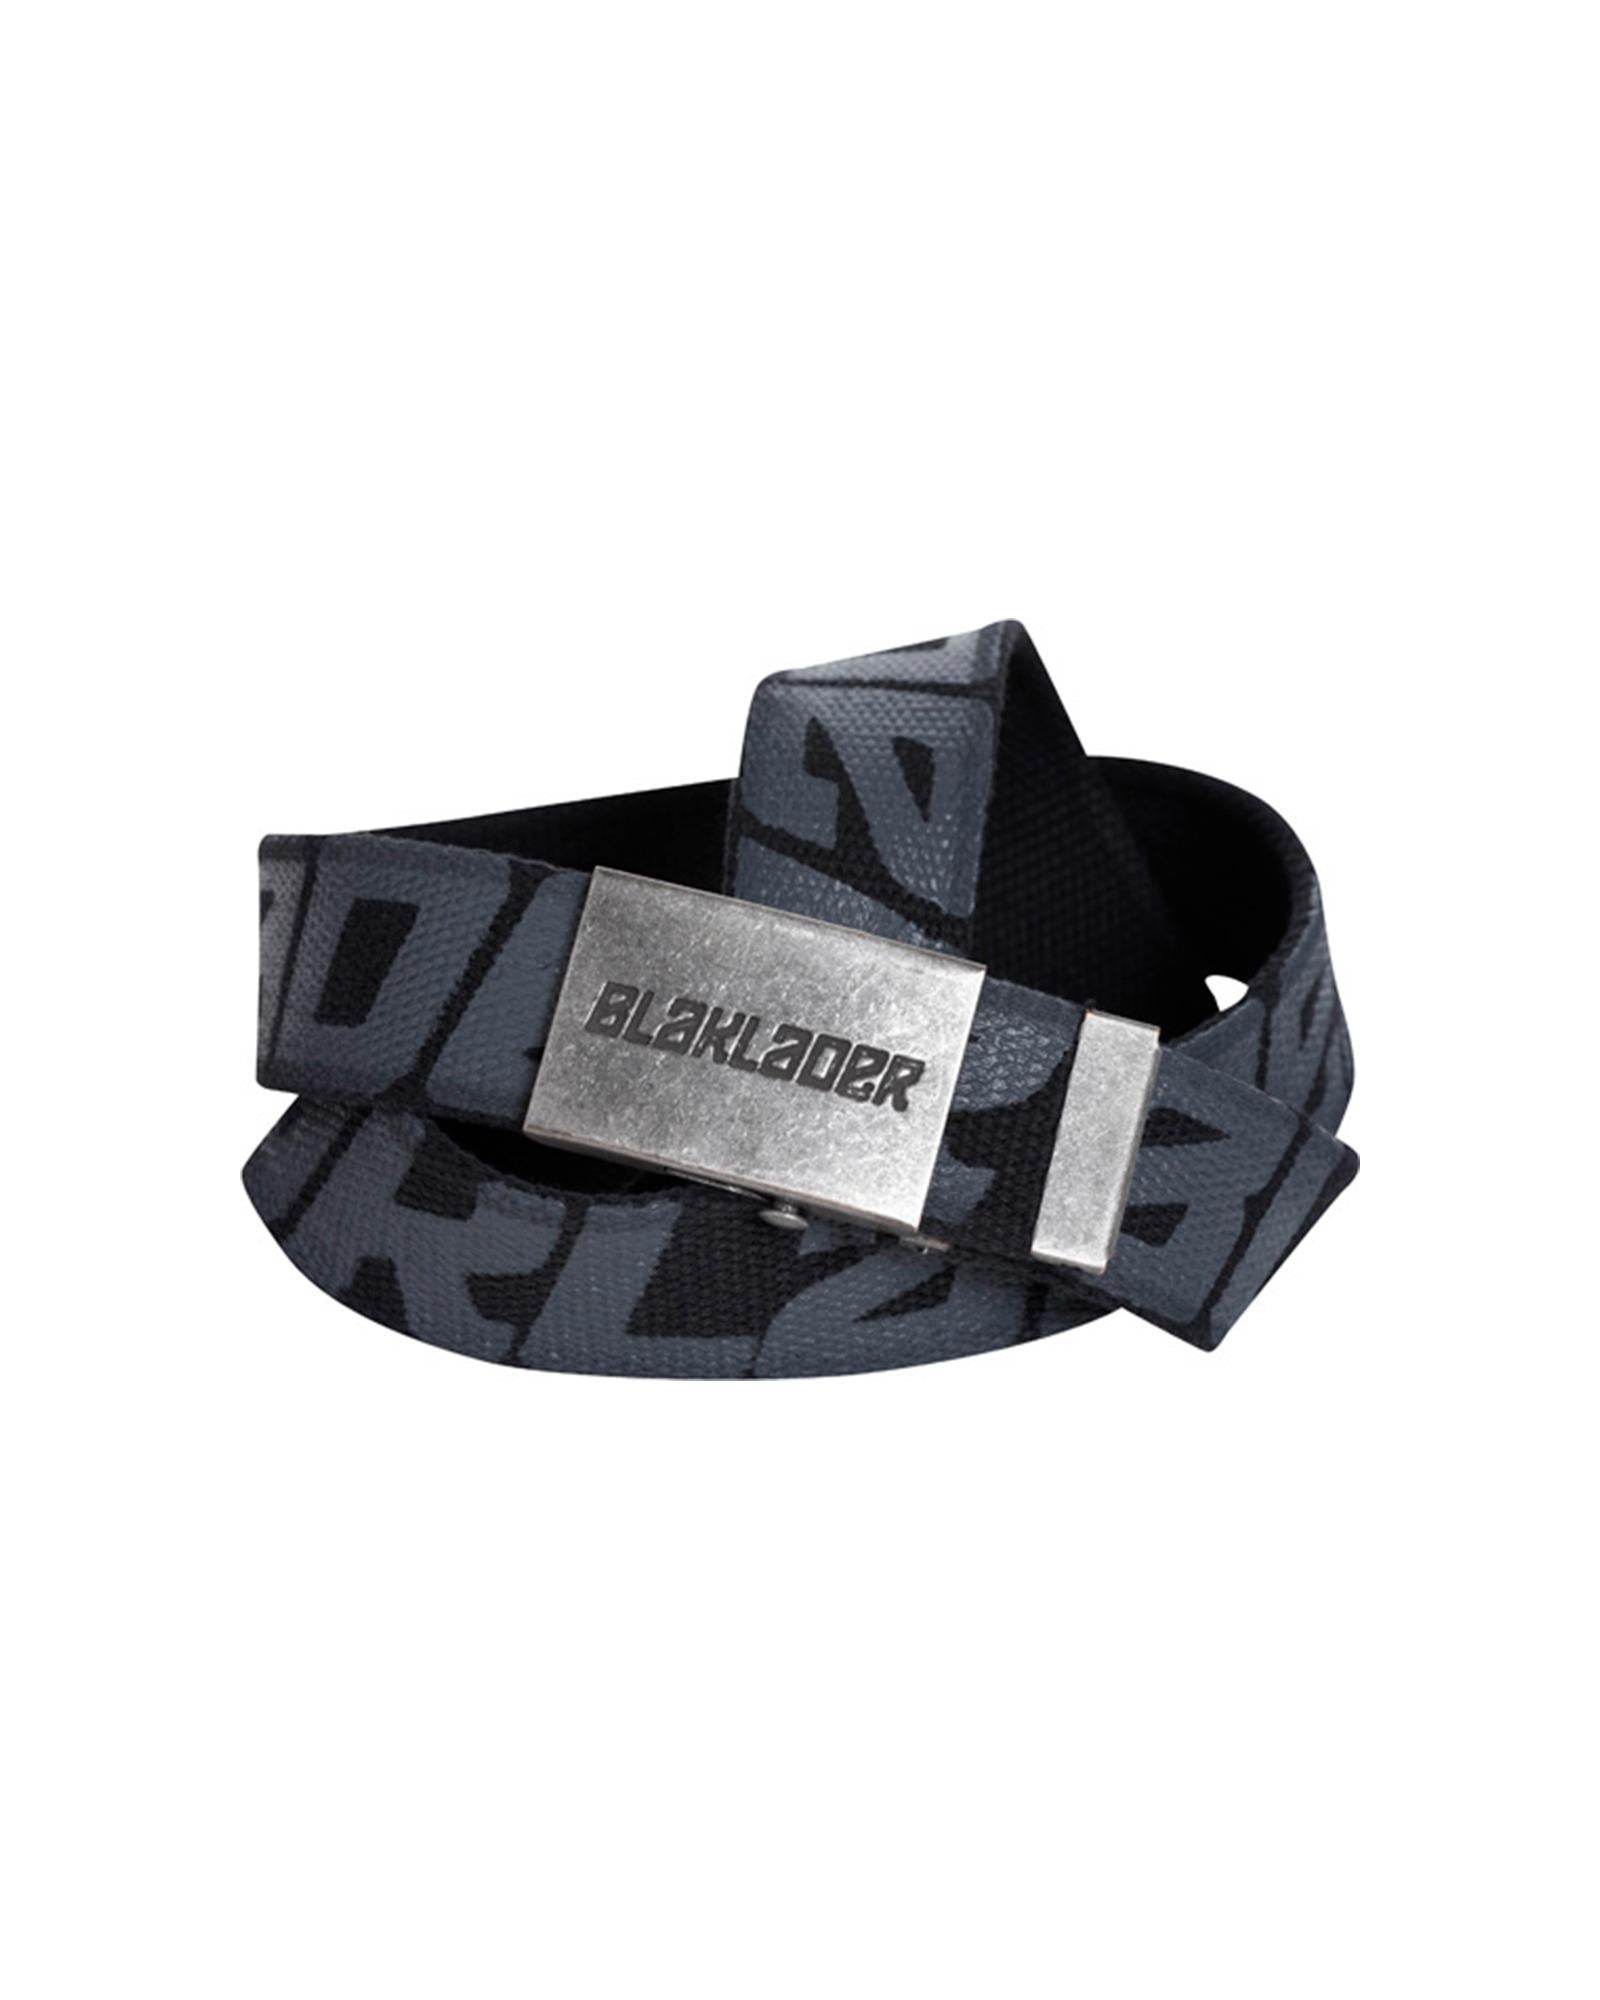 Blaklader black textile 4cm 125cm long belt with metal buckle #4033